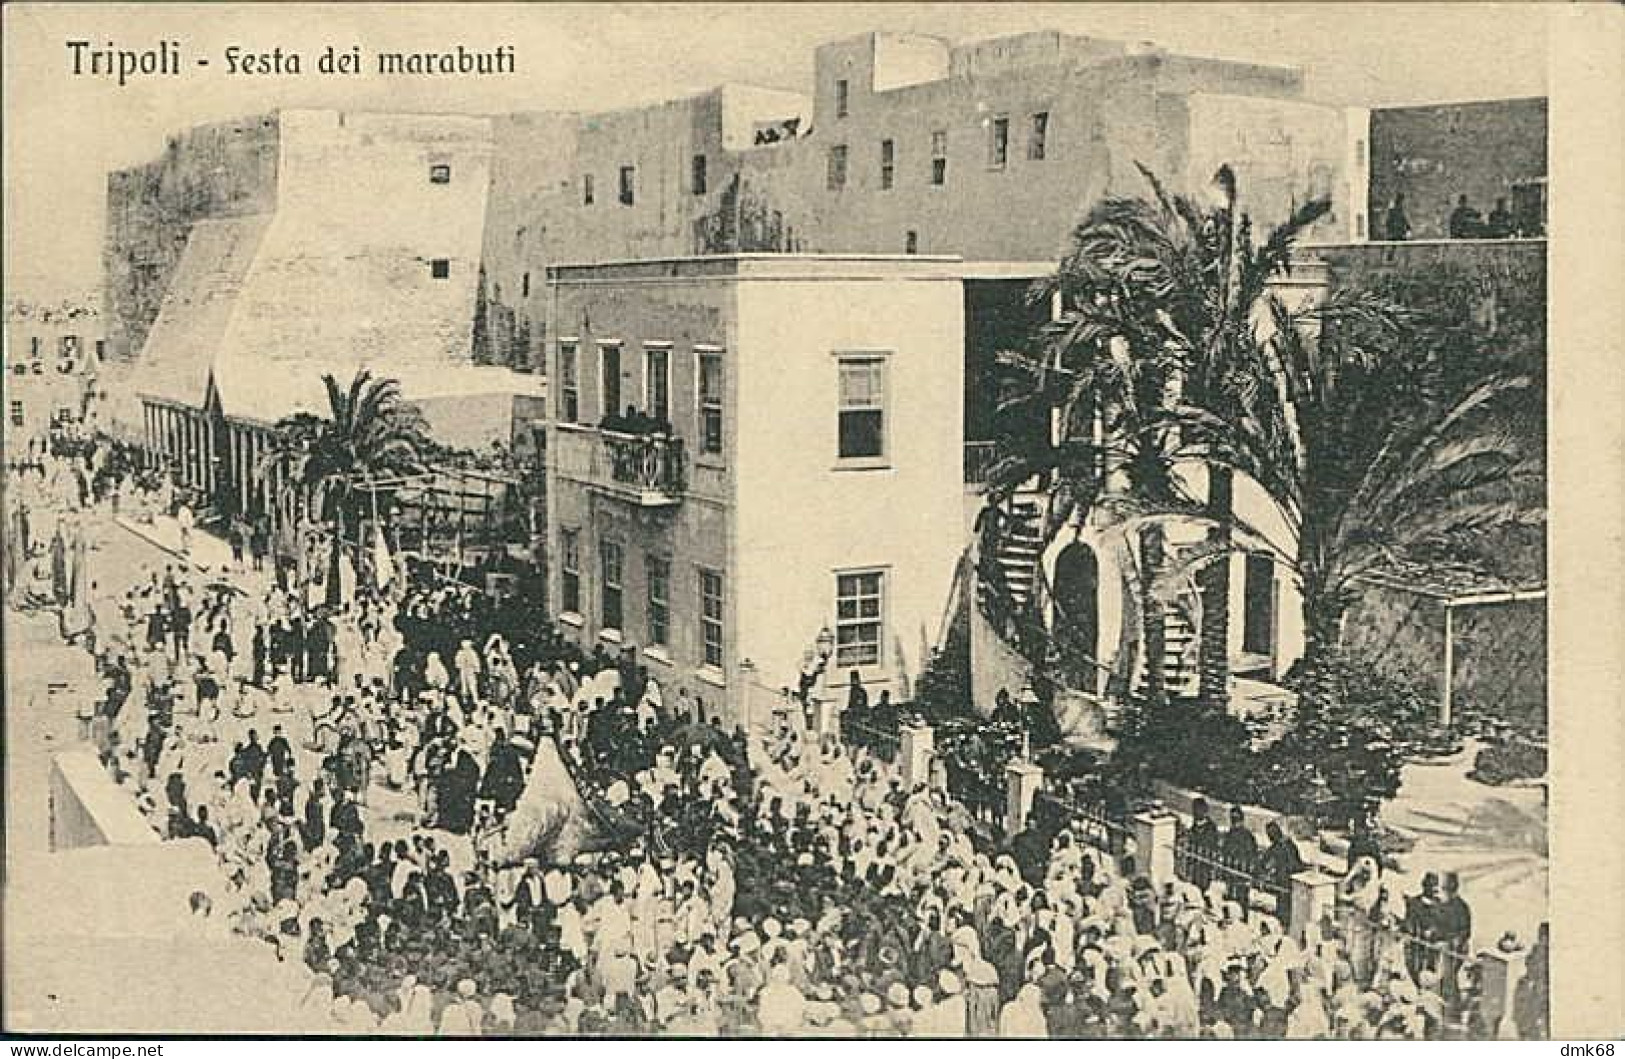 LIBIA / LIBYA - TRIPOLI - FESTA DEI MARABUTI - EDIT TRAMPETTI & MIGLIACCIO - 1910s (12452) - Libye